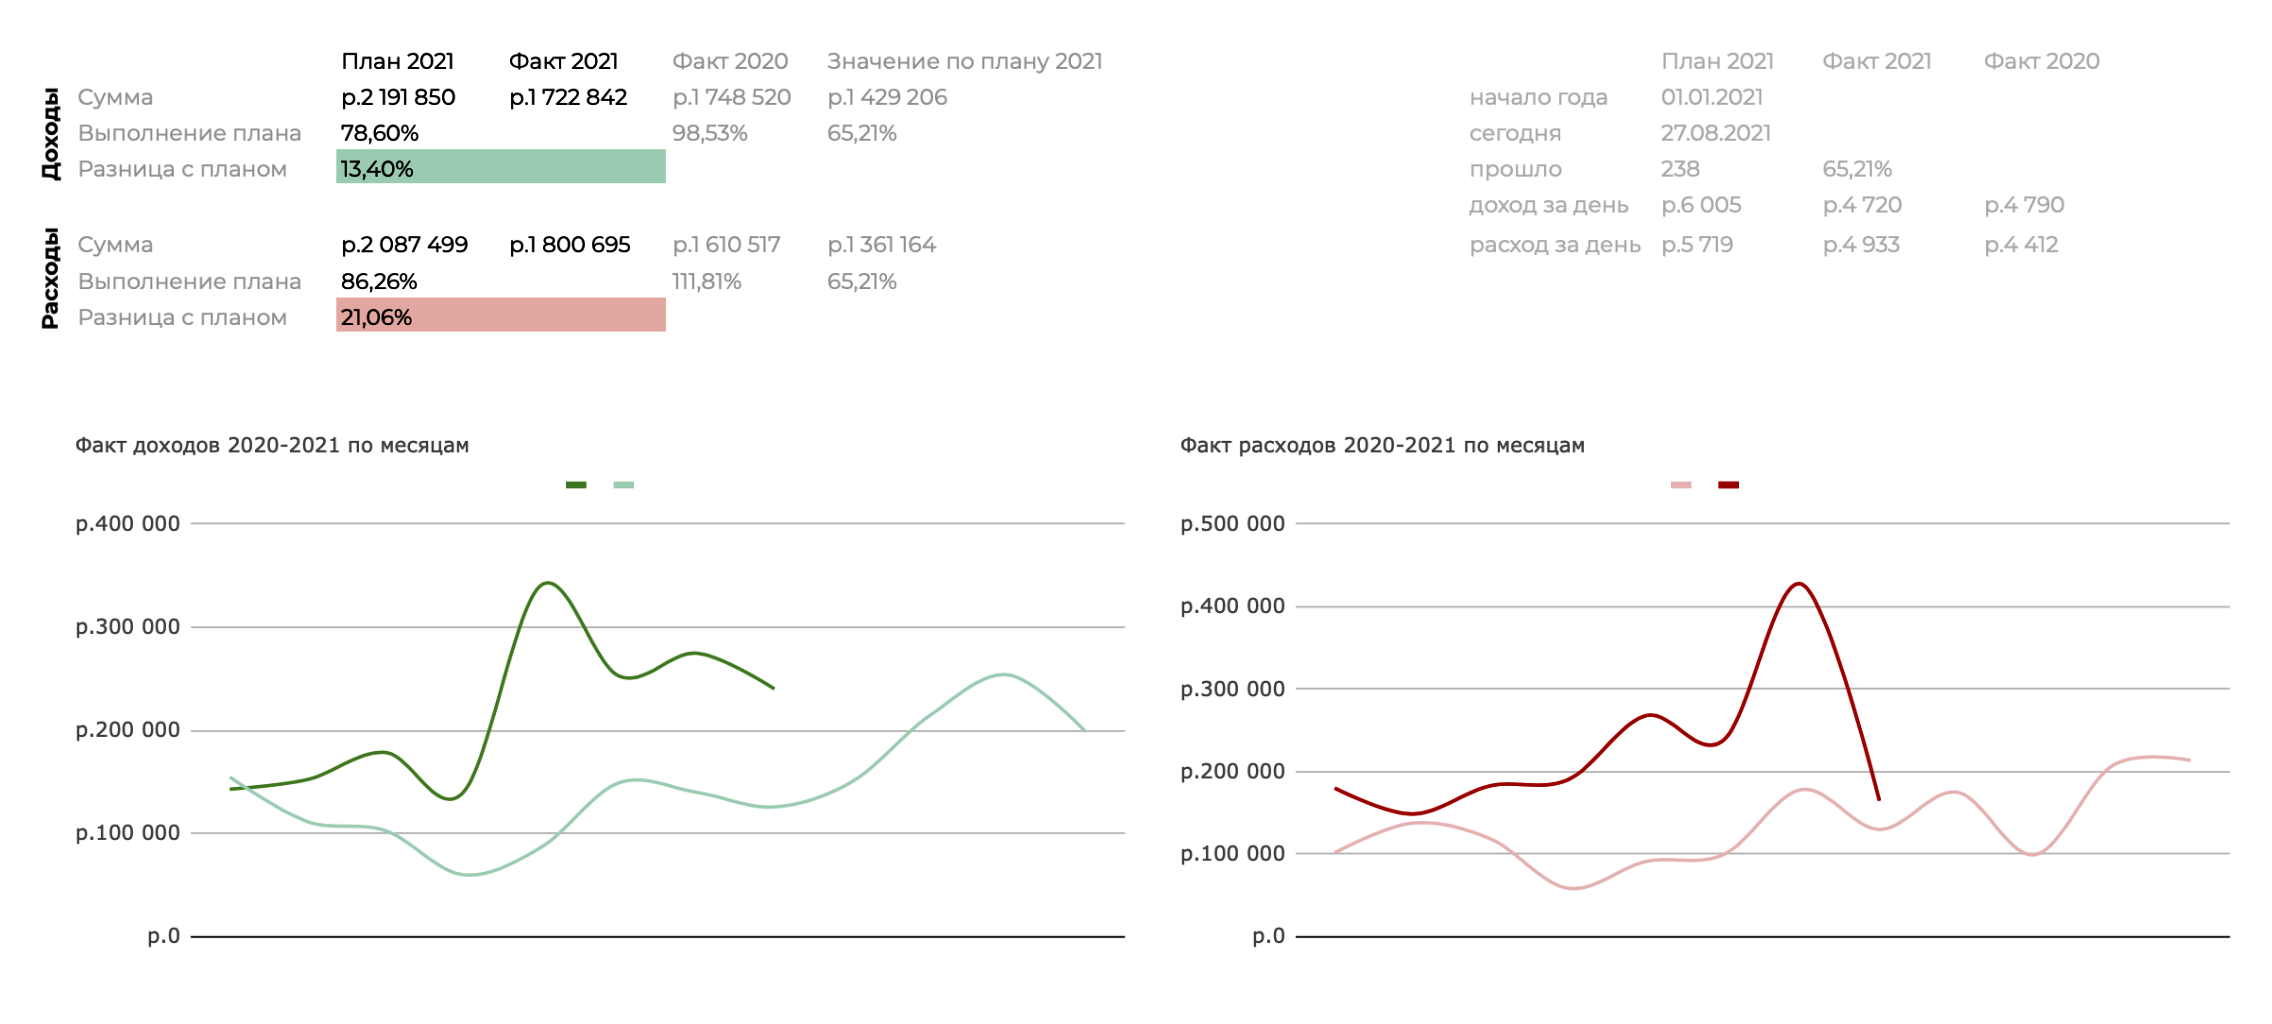 Сверху — план и факт текущего года. Подсвечивающиеся проценты — индикатор выполнения или перевыполнения плана. Зеленый график — доходы. Красный — расходы. Яркие линии показывают текущий год, а бледные — предыдущий. Так можно понимать, есть ли разница относительно такого же периода в прошлом году